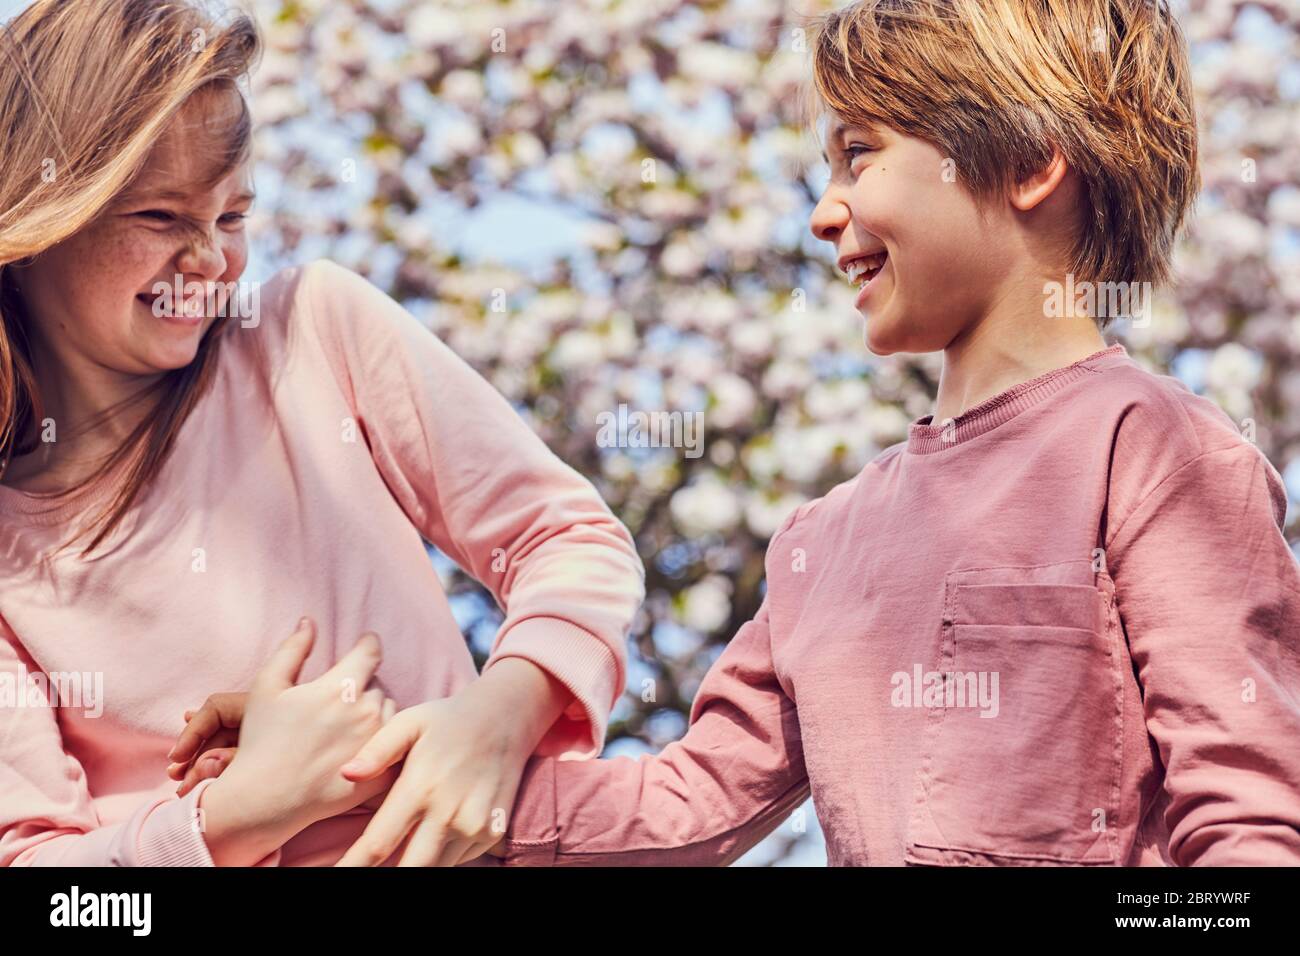 Lächelnd brünette junge und Mädchen im Freien stehen, neckend einander. Stockfoto